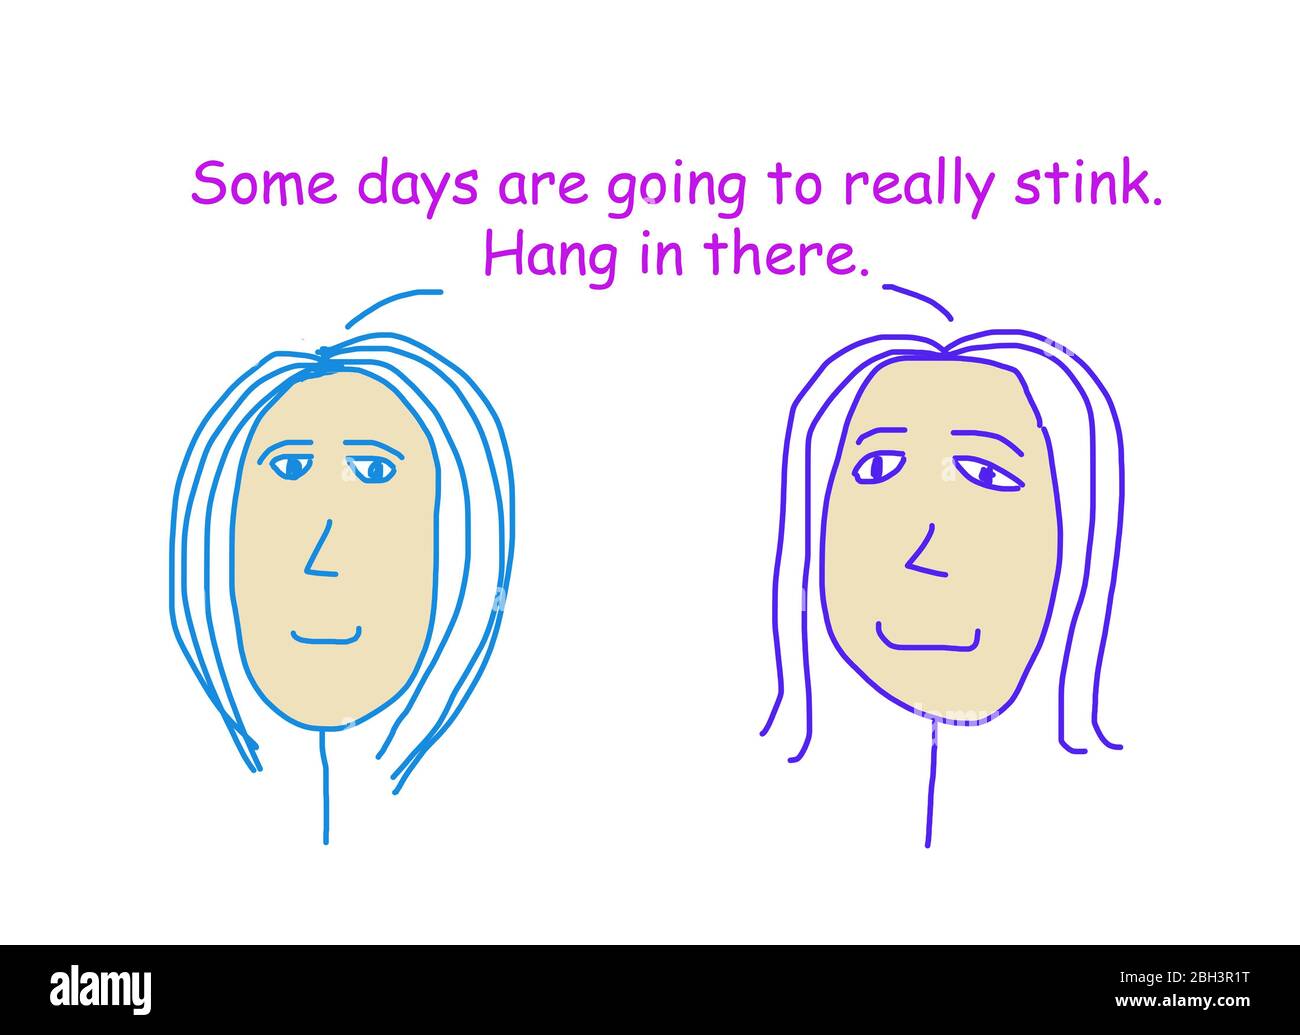 Farbe Cartoon zeigt zwei Frauen reden über die Bedeutung des Hängenbleiben dort auch an Tagen, die stinken. Stockfoto